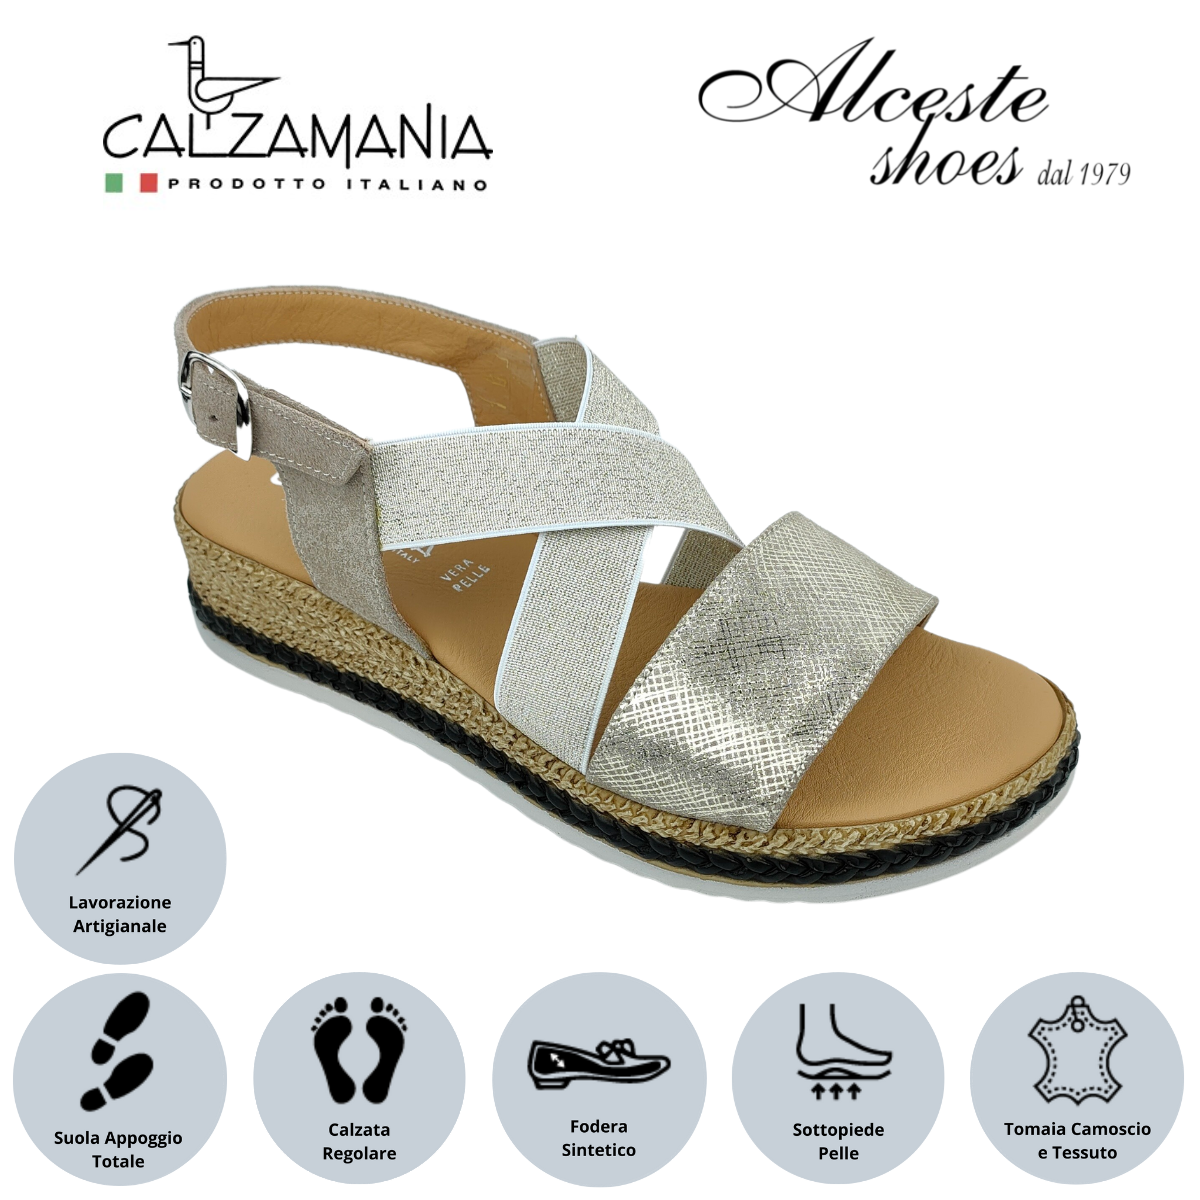 Sandalo con Zeppa "Calzamania" Art. Luna8729 Elastico Platino e Camoscio Stampato Platino Alceste Shoes 3